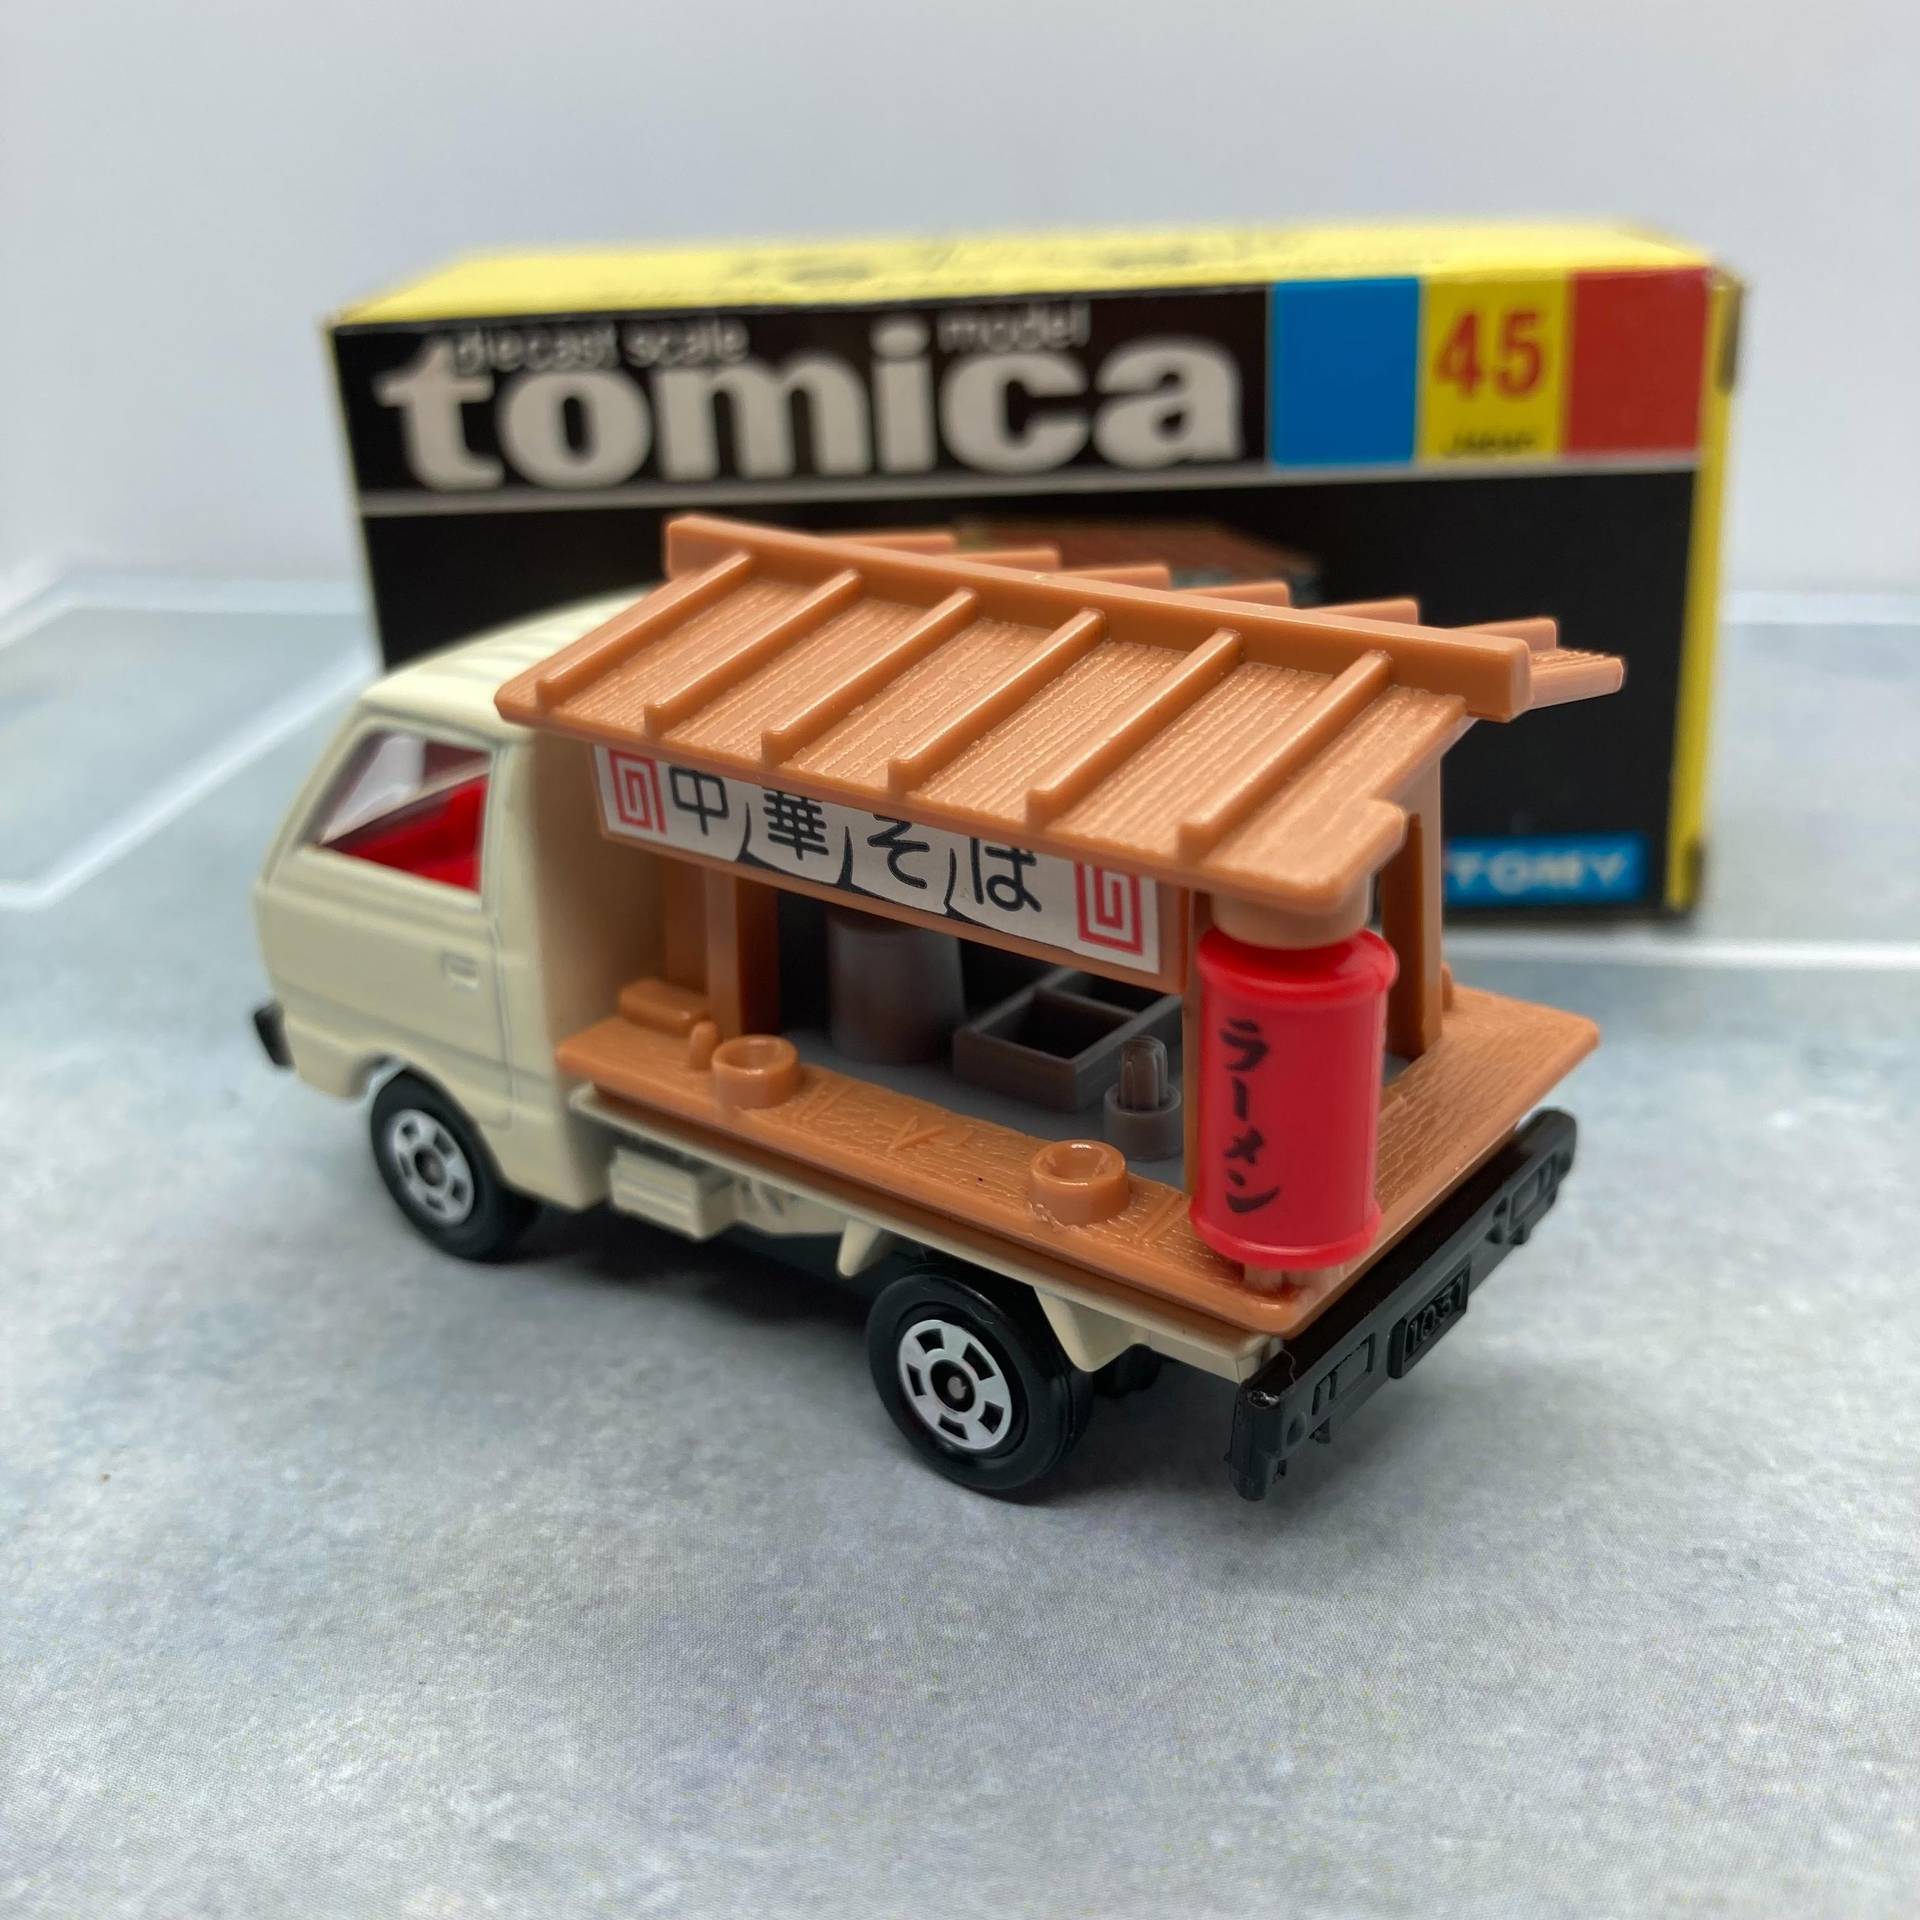 Tomica 屋台拉麵車 Momax00的創作 巴哈姆特